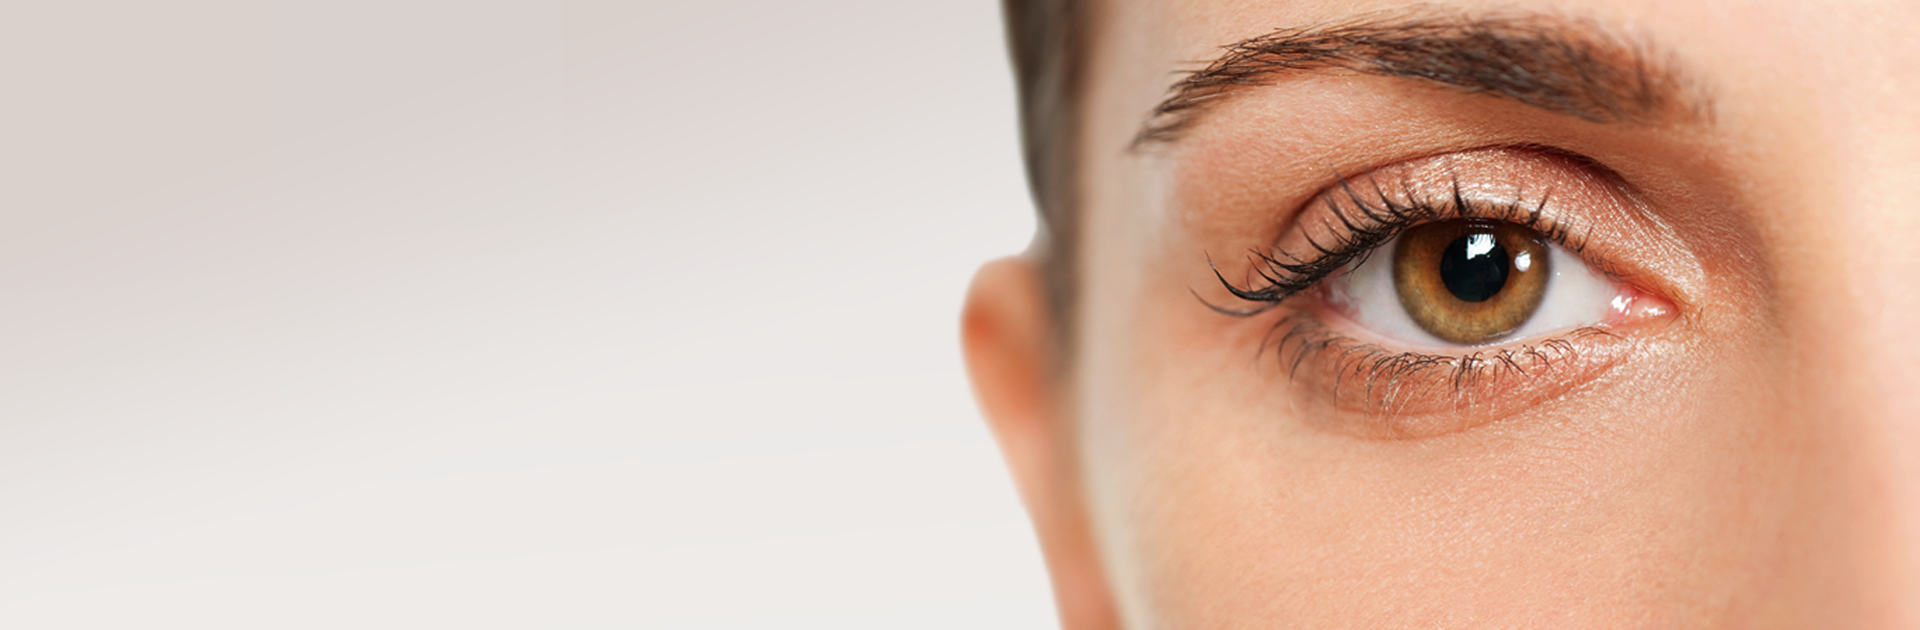 Plastic surgery of the eyelid – blepharoplasty